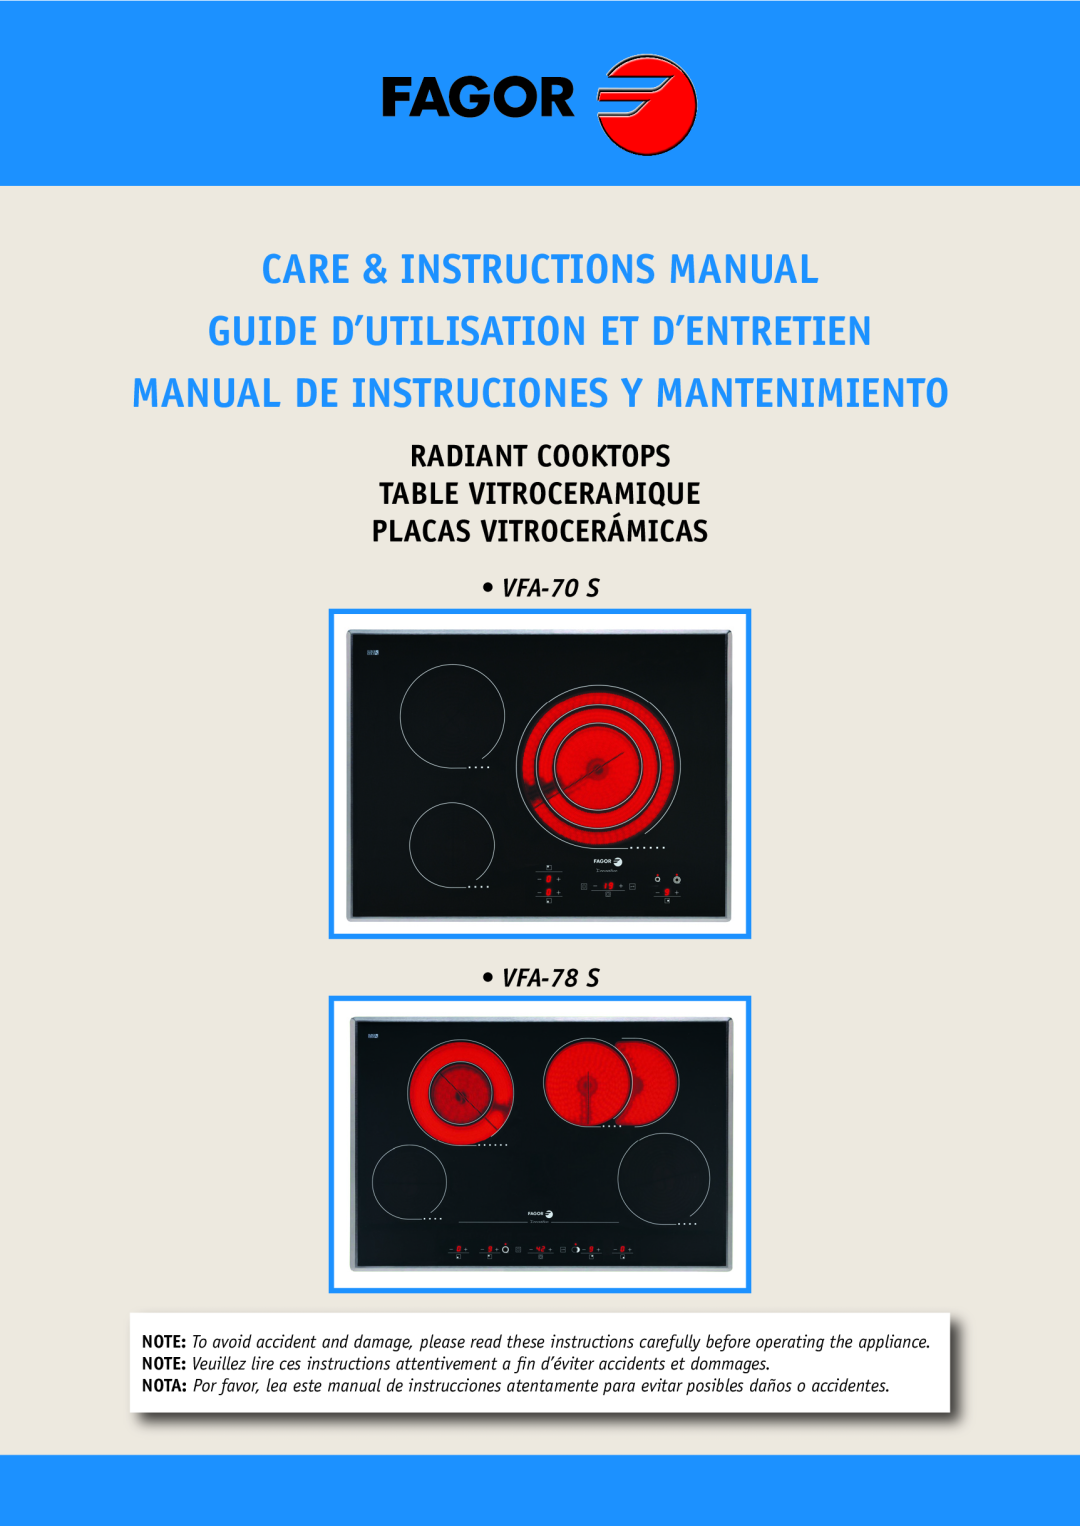 Fagor America VFA-70 S manual Care & Instructions Manual, Guide D’Utilisation Et D’Entretien, Placas Vitrocerámicas 